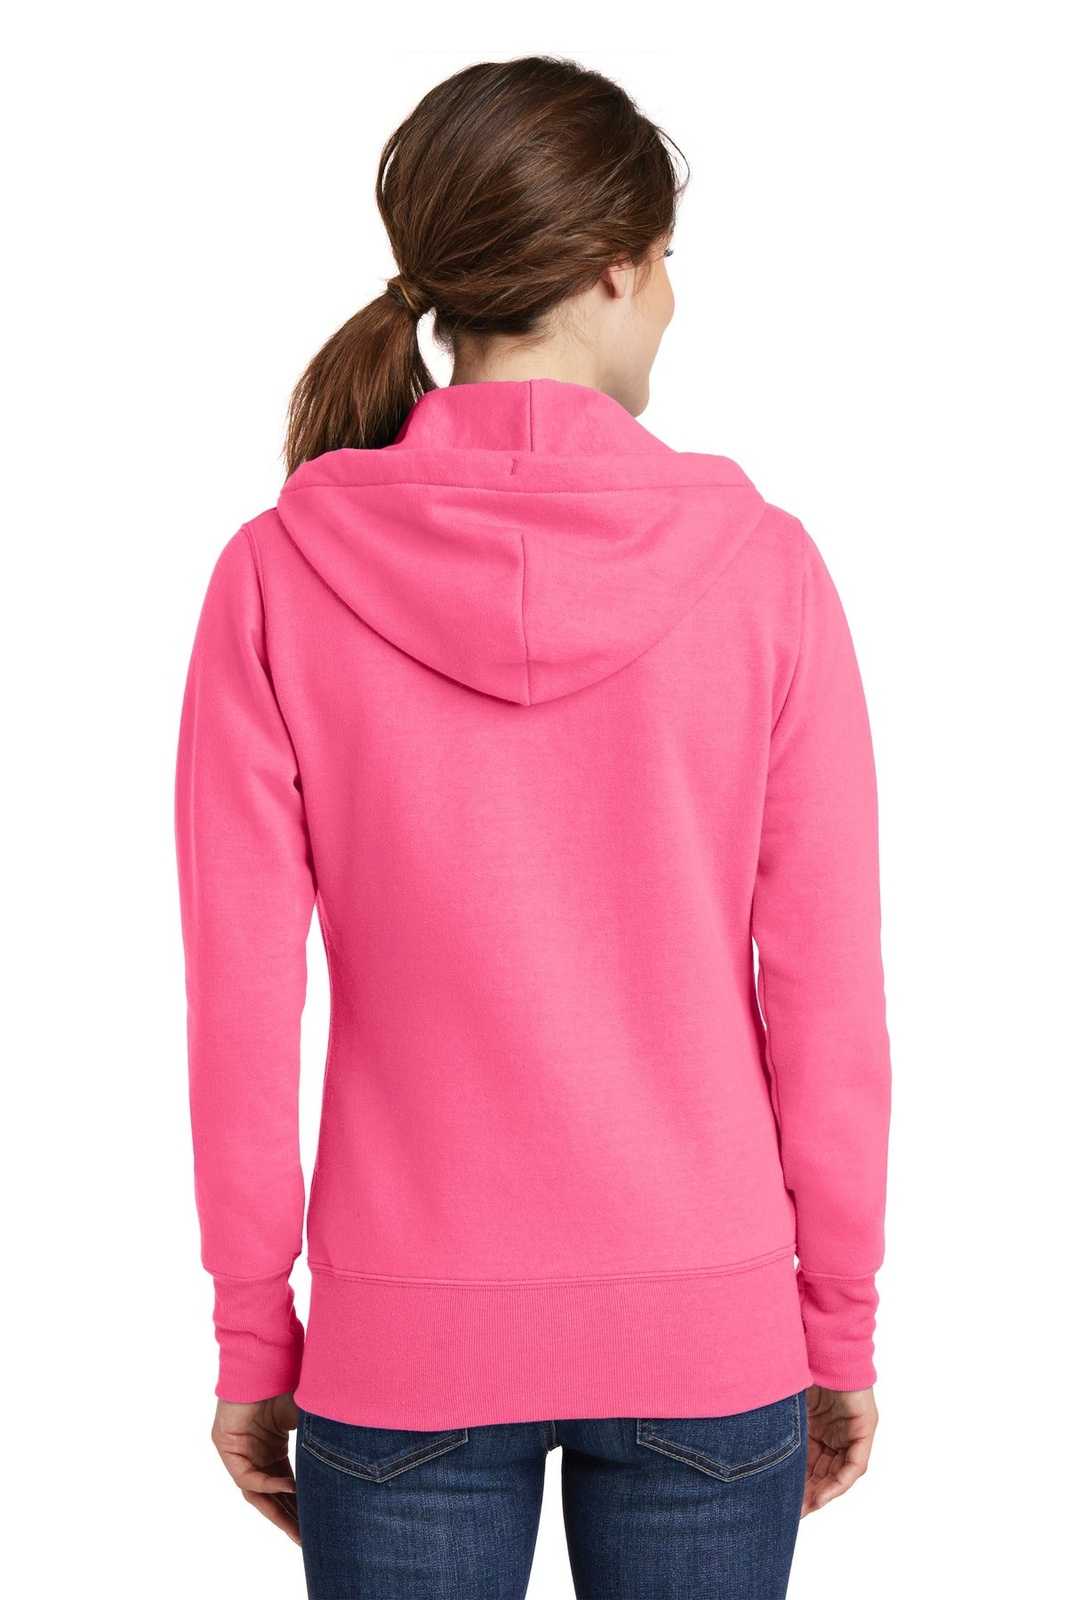 Port & Company LPC78ZH Ladies Core Fleece Full-Zip Hooded Sweatshirt - Neon Pink - HIT a Double - 1